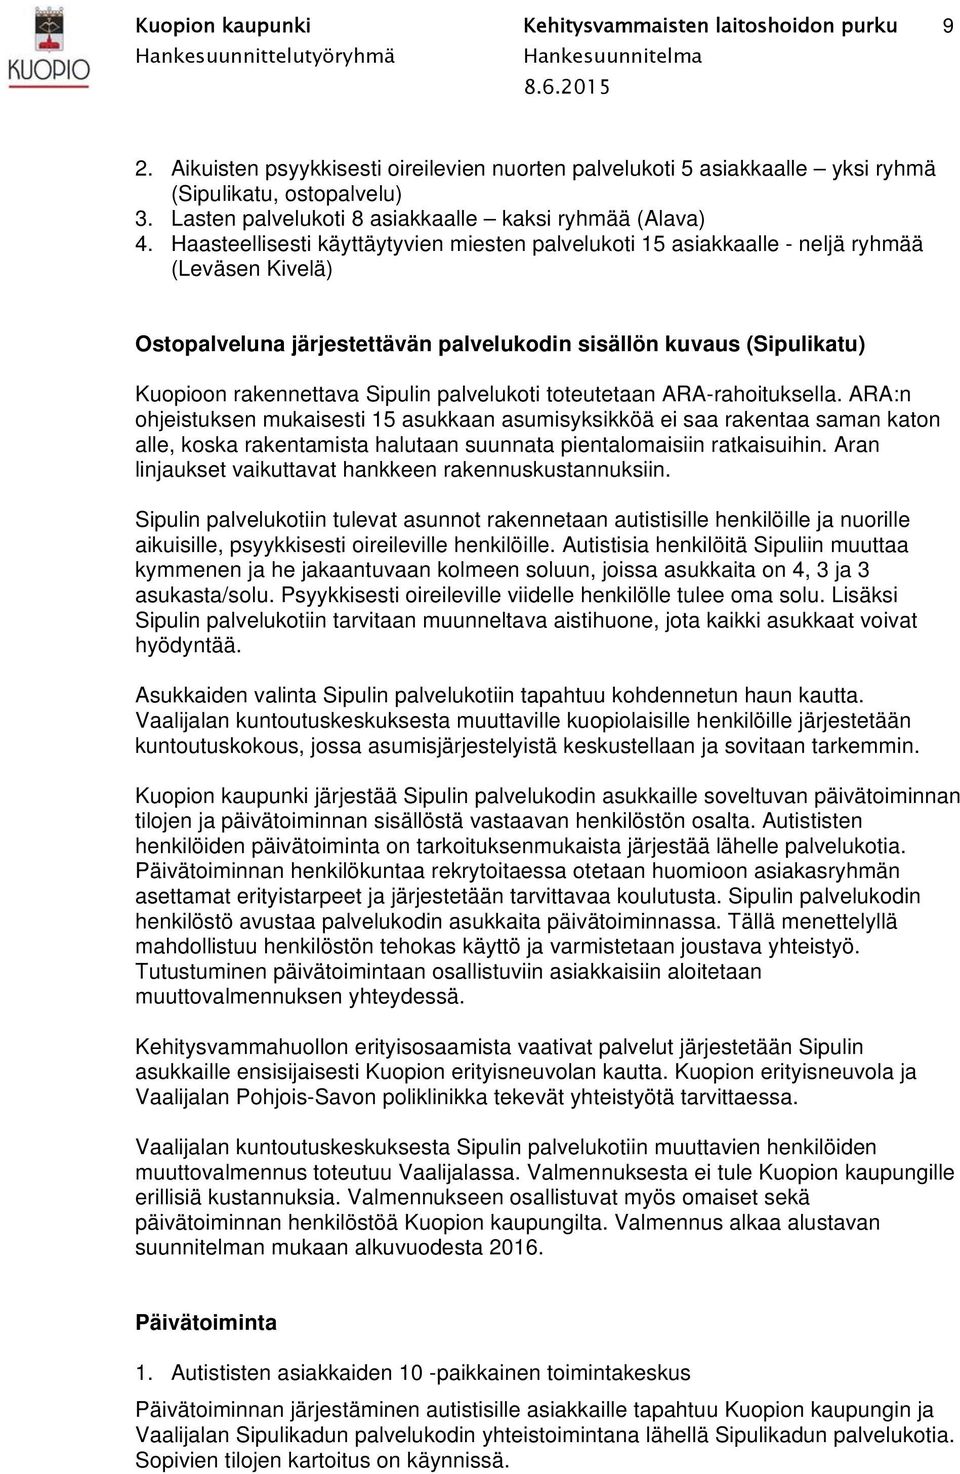 Haasteellisesti käyttäytyvien miesten palvelukoti 15 asiakkaalle - neljä ryhmää (Leväsen Kivelä) Ostopalveluna järjestettävän palvelukodin sisällön kuvaus (Sipulikatu) Kuopioon rakennettava Sipulin